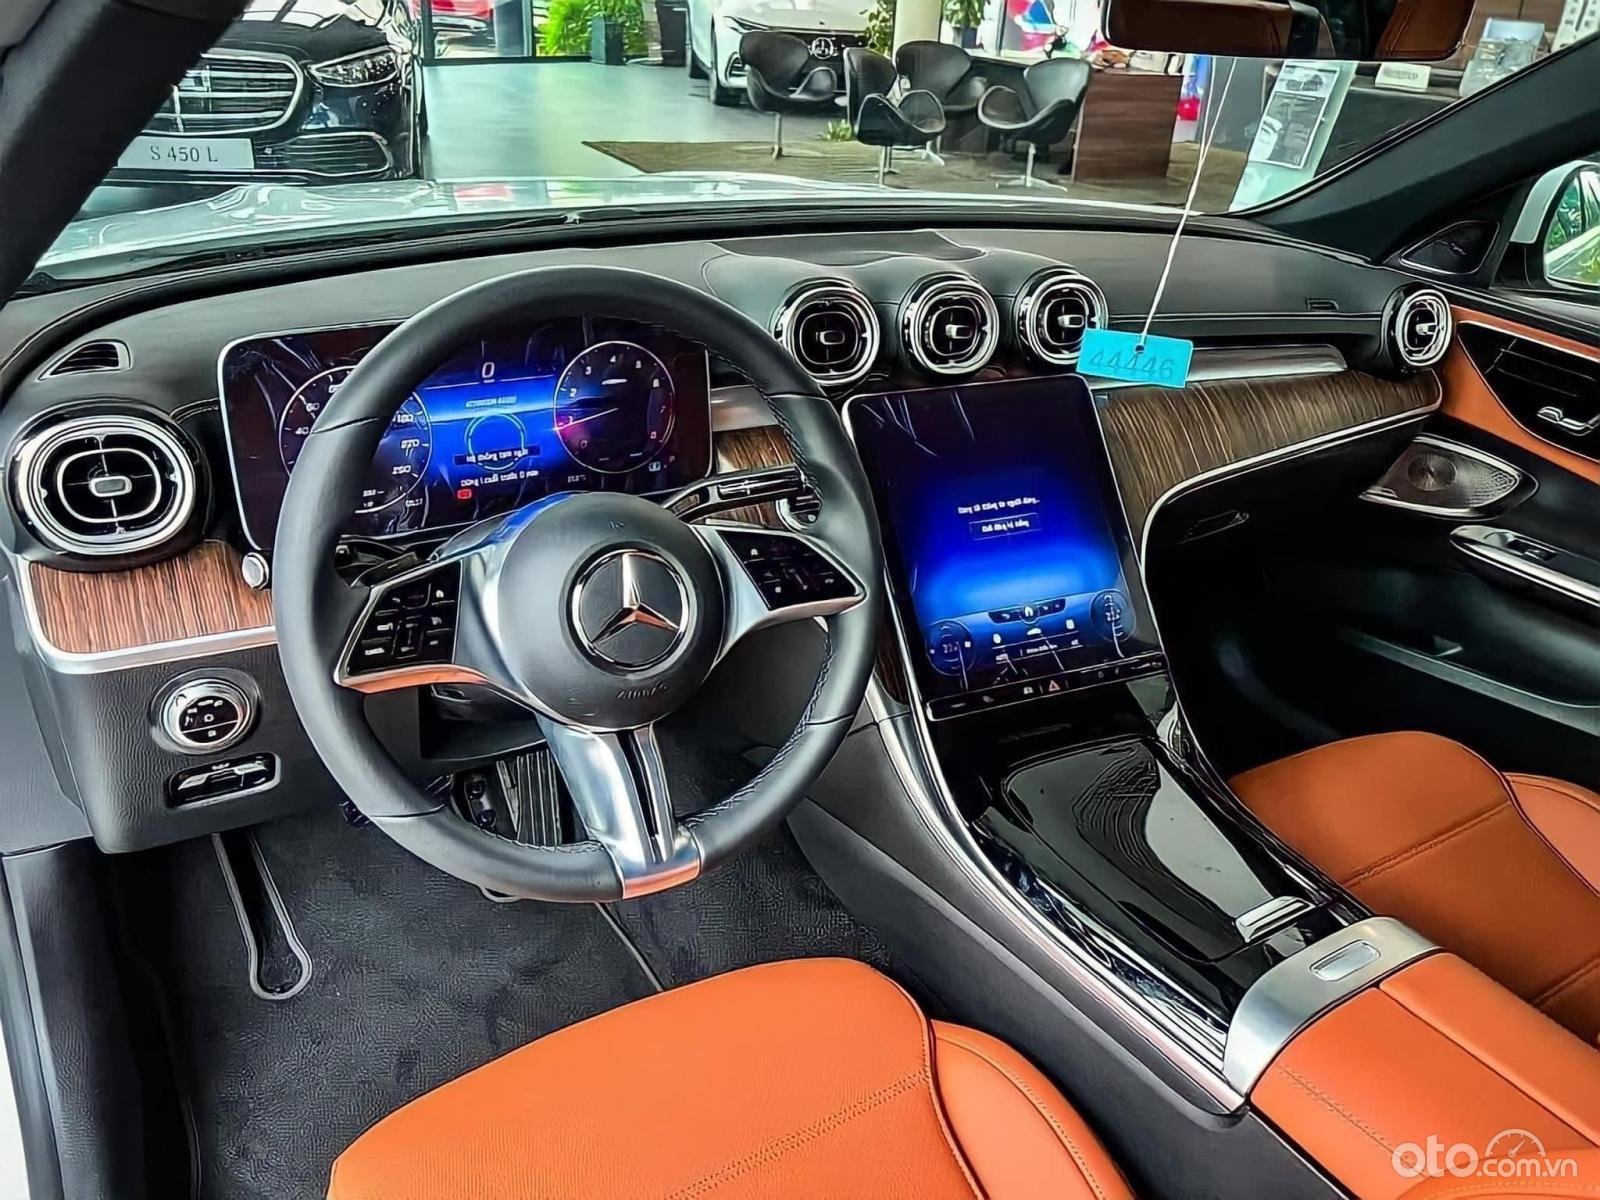 Khoang nội thất Mercedes-Benz C 200 Avantgarde 2022 ngập tràn công nghệ hiện đại, mang tính tương lai.